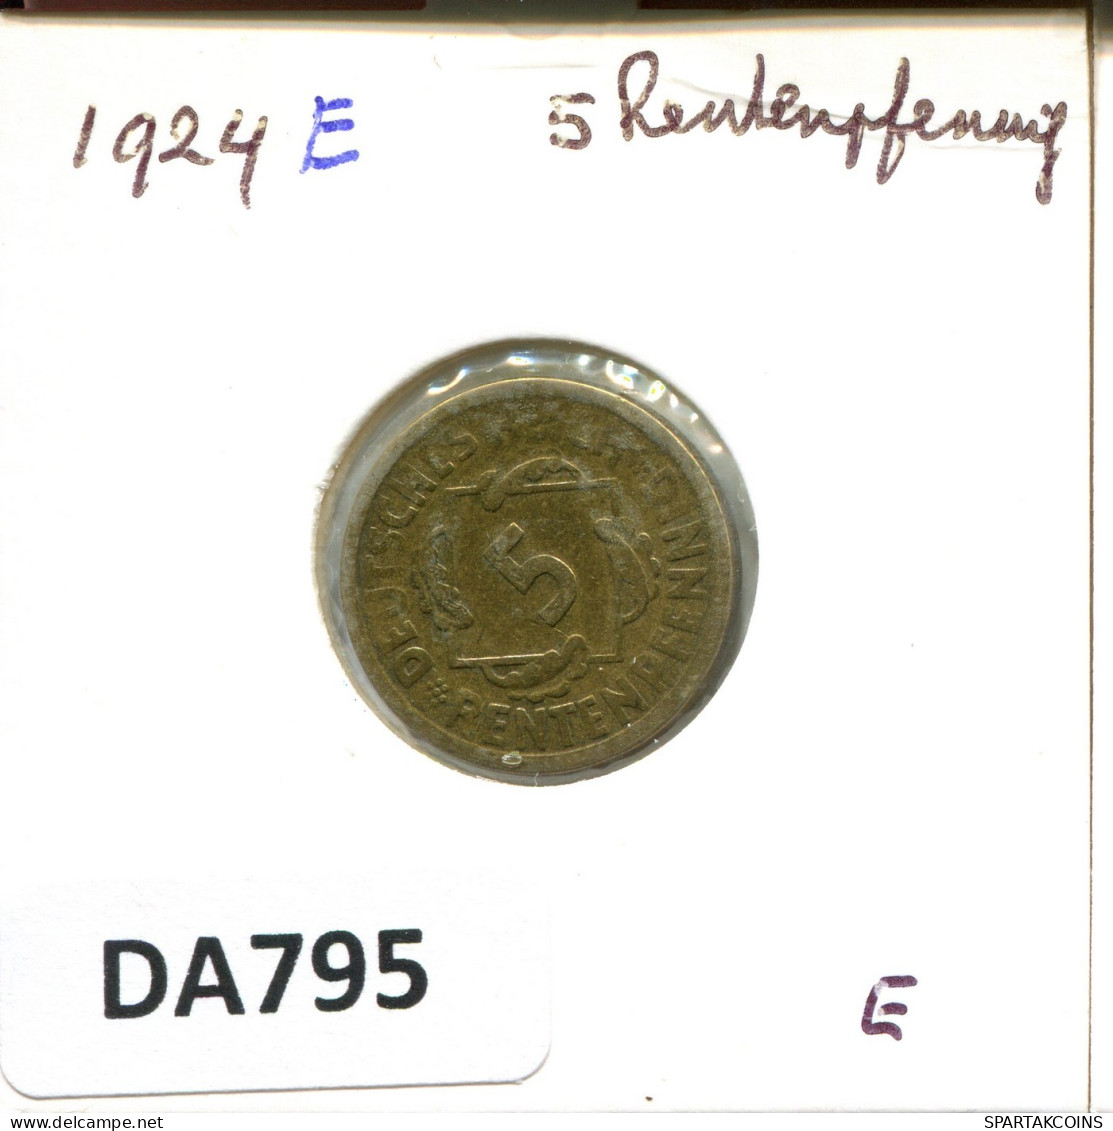 5 RENTENPFENNIG 1924 E ALLEMAGNE Pièce GERMANY #DA795.F.A - 5 Rentenpfennig & 5 Reichspfennig